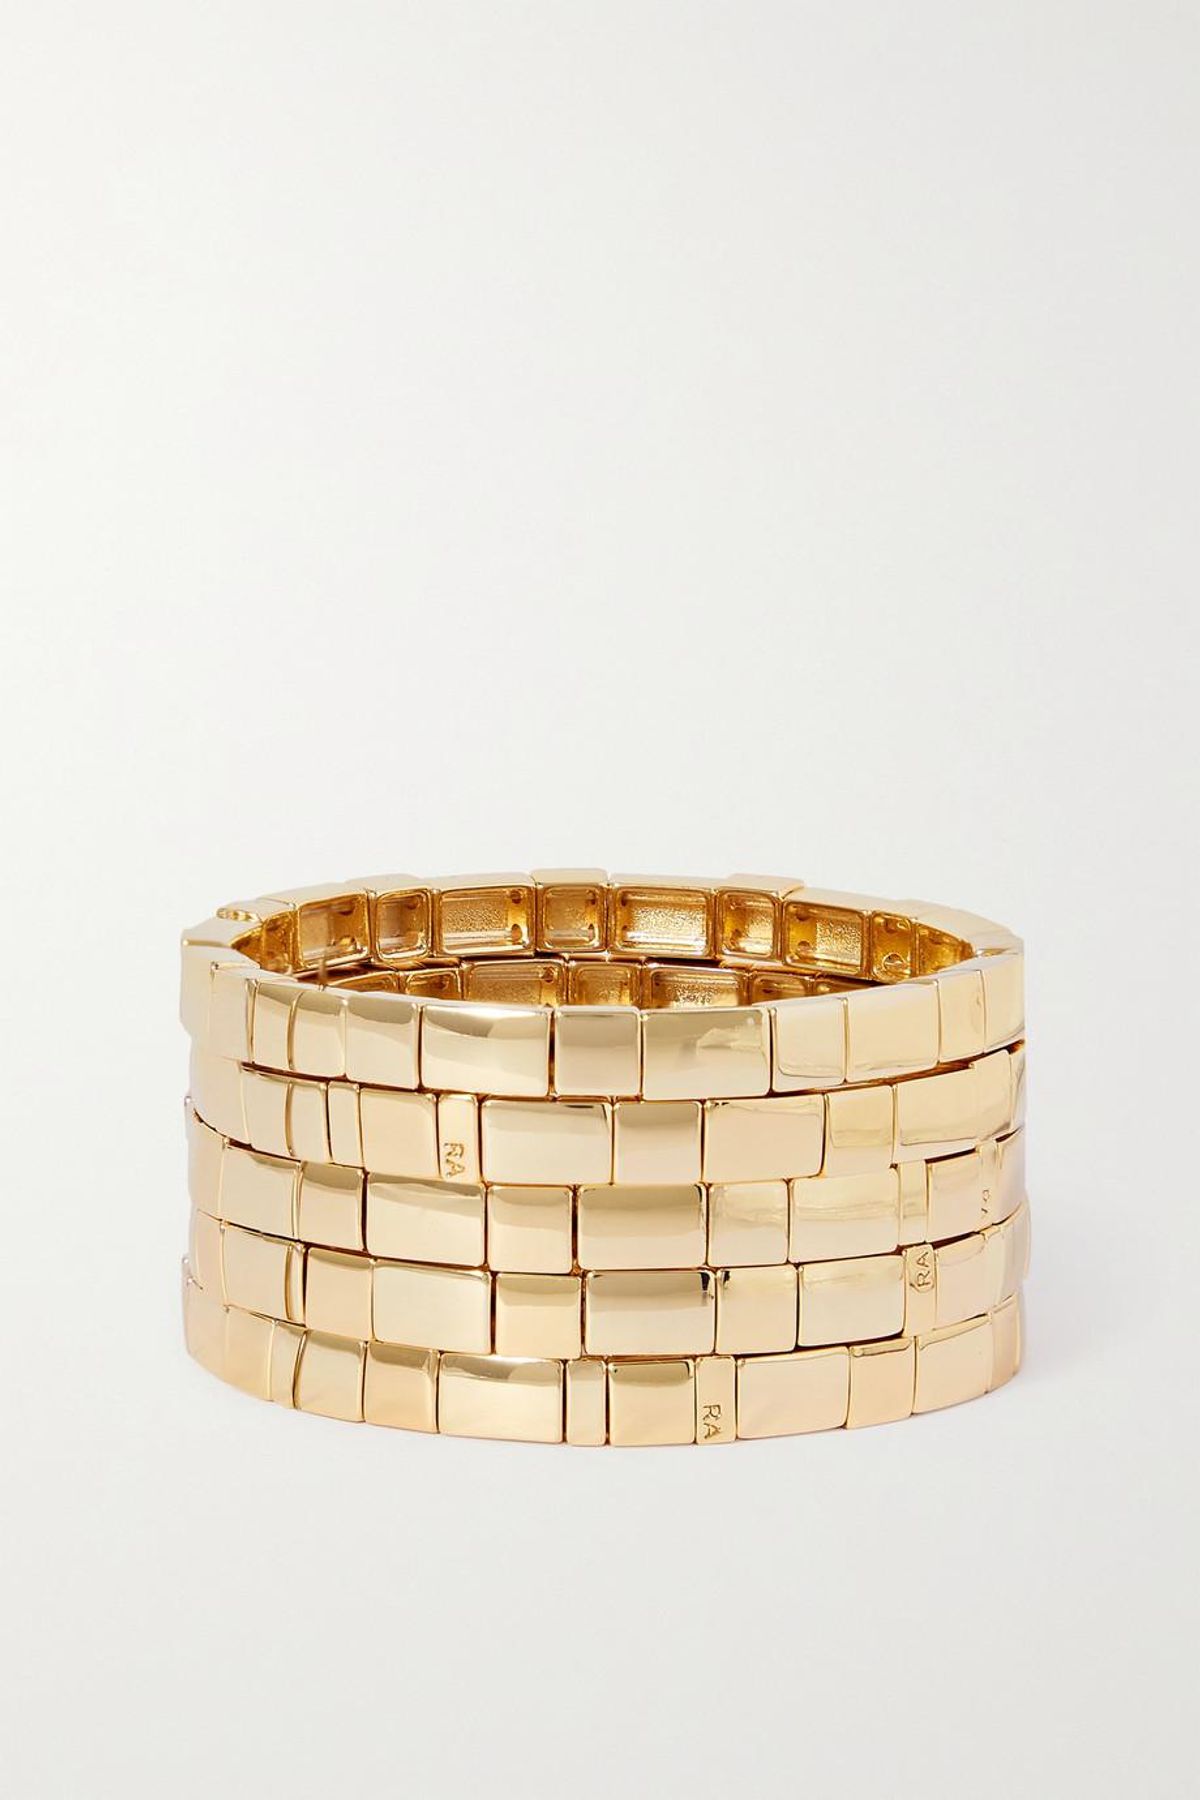 Brick by Brick Set of Five Gold Tone Bracelets